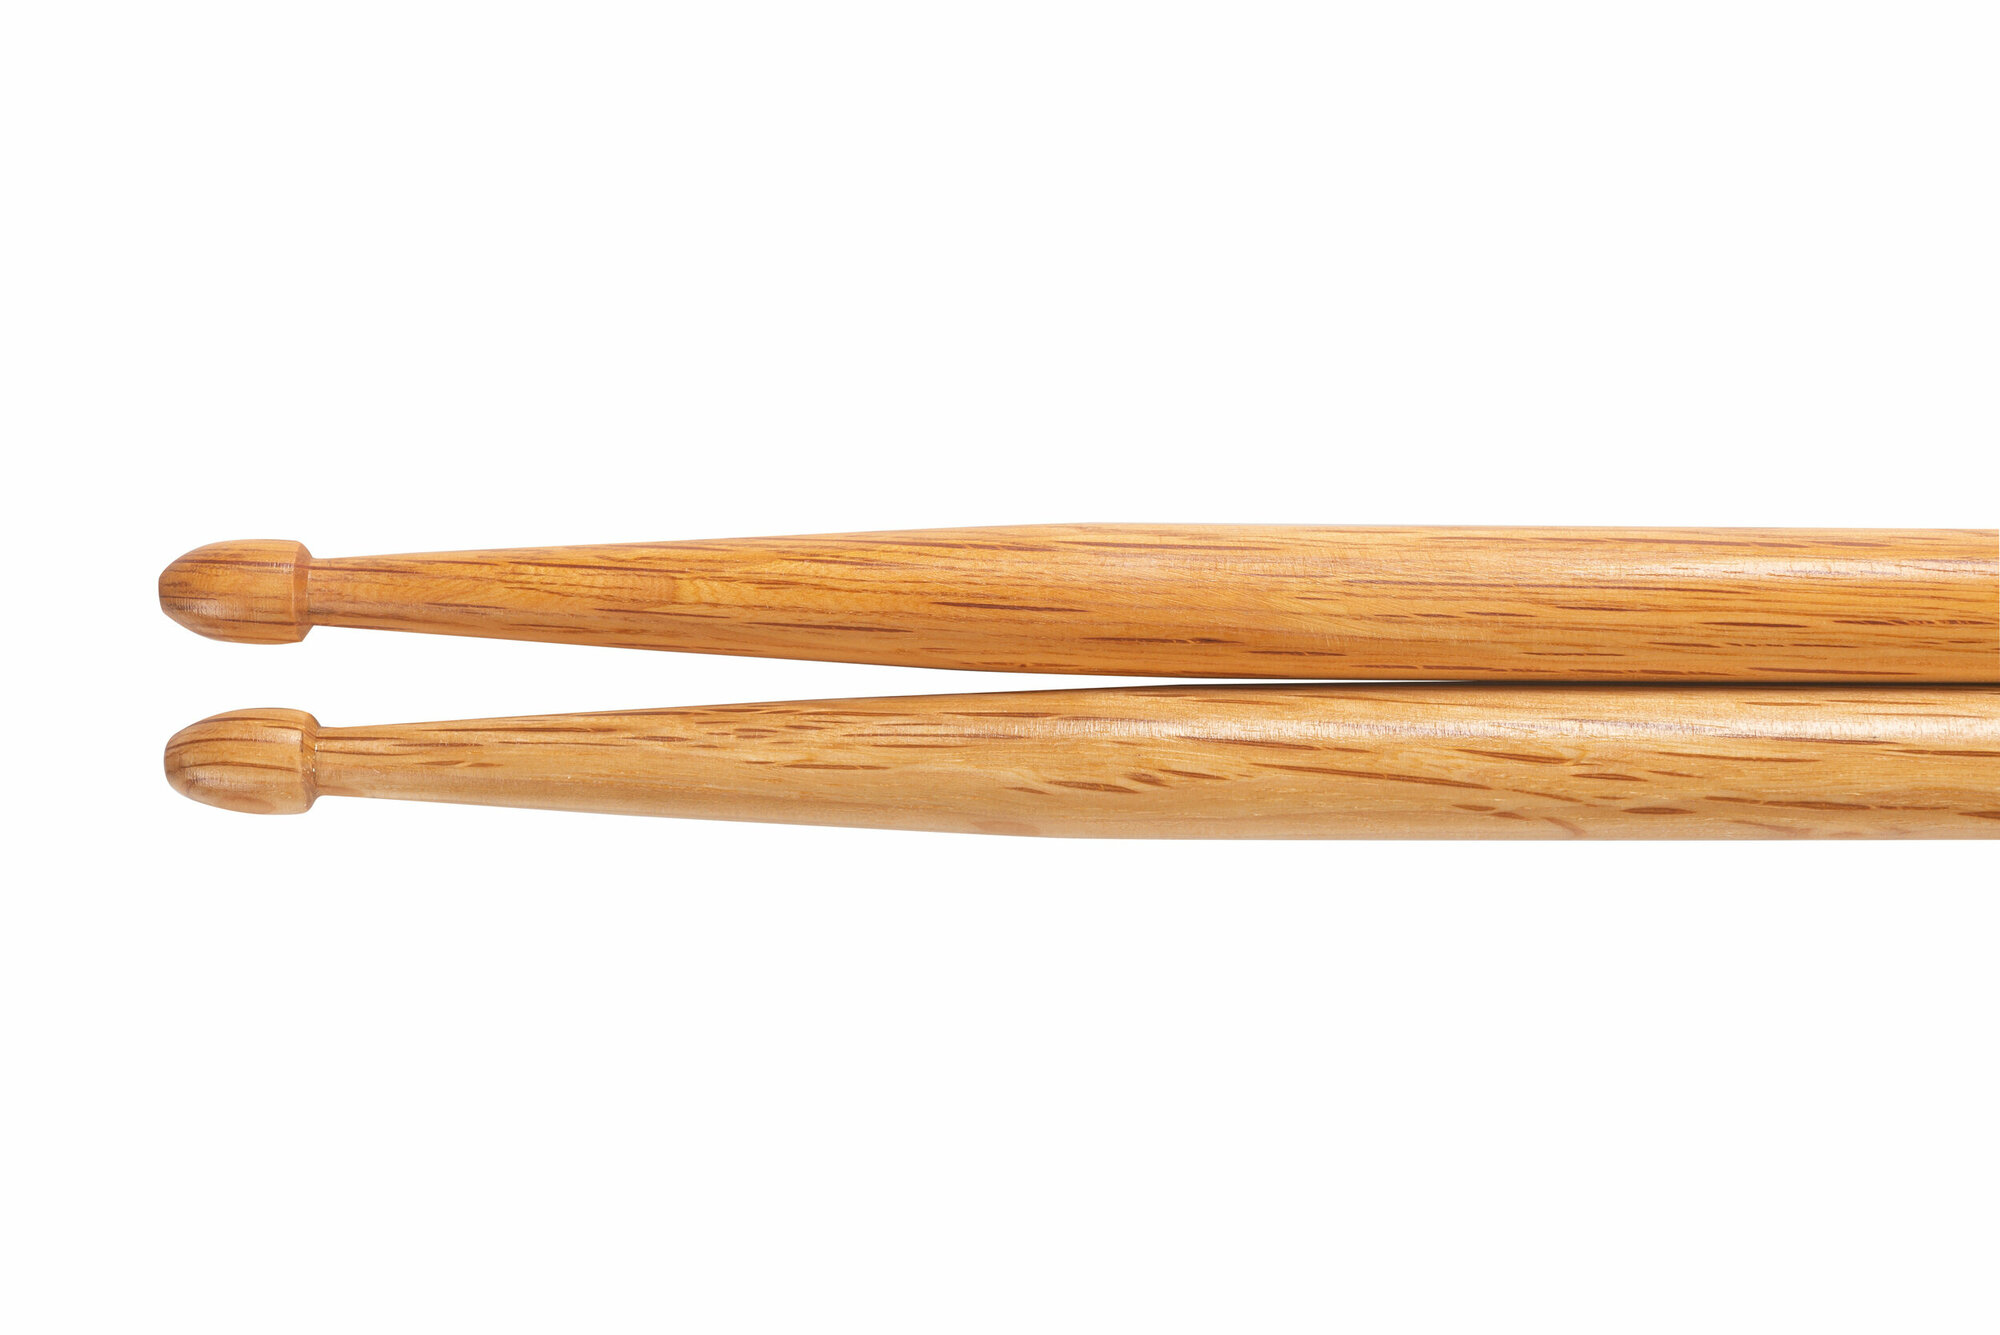 UPTONE American Premium Quality Oak 5B барабанные палочки, дуб, деревянный наконечник, цвет - натуральный